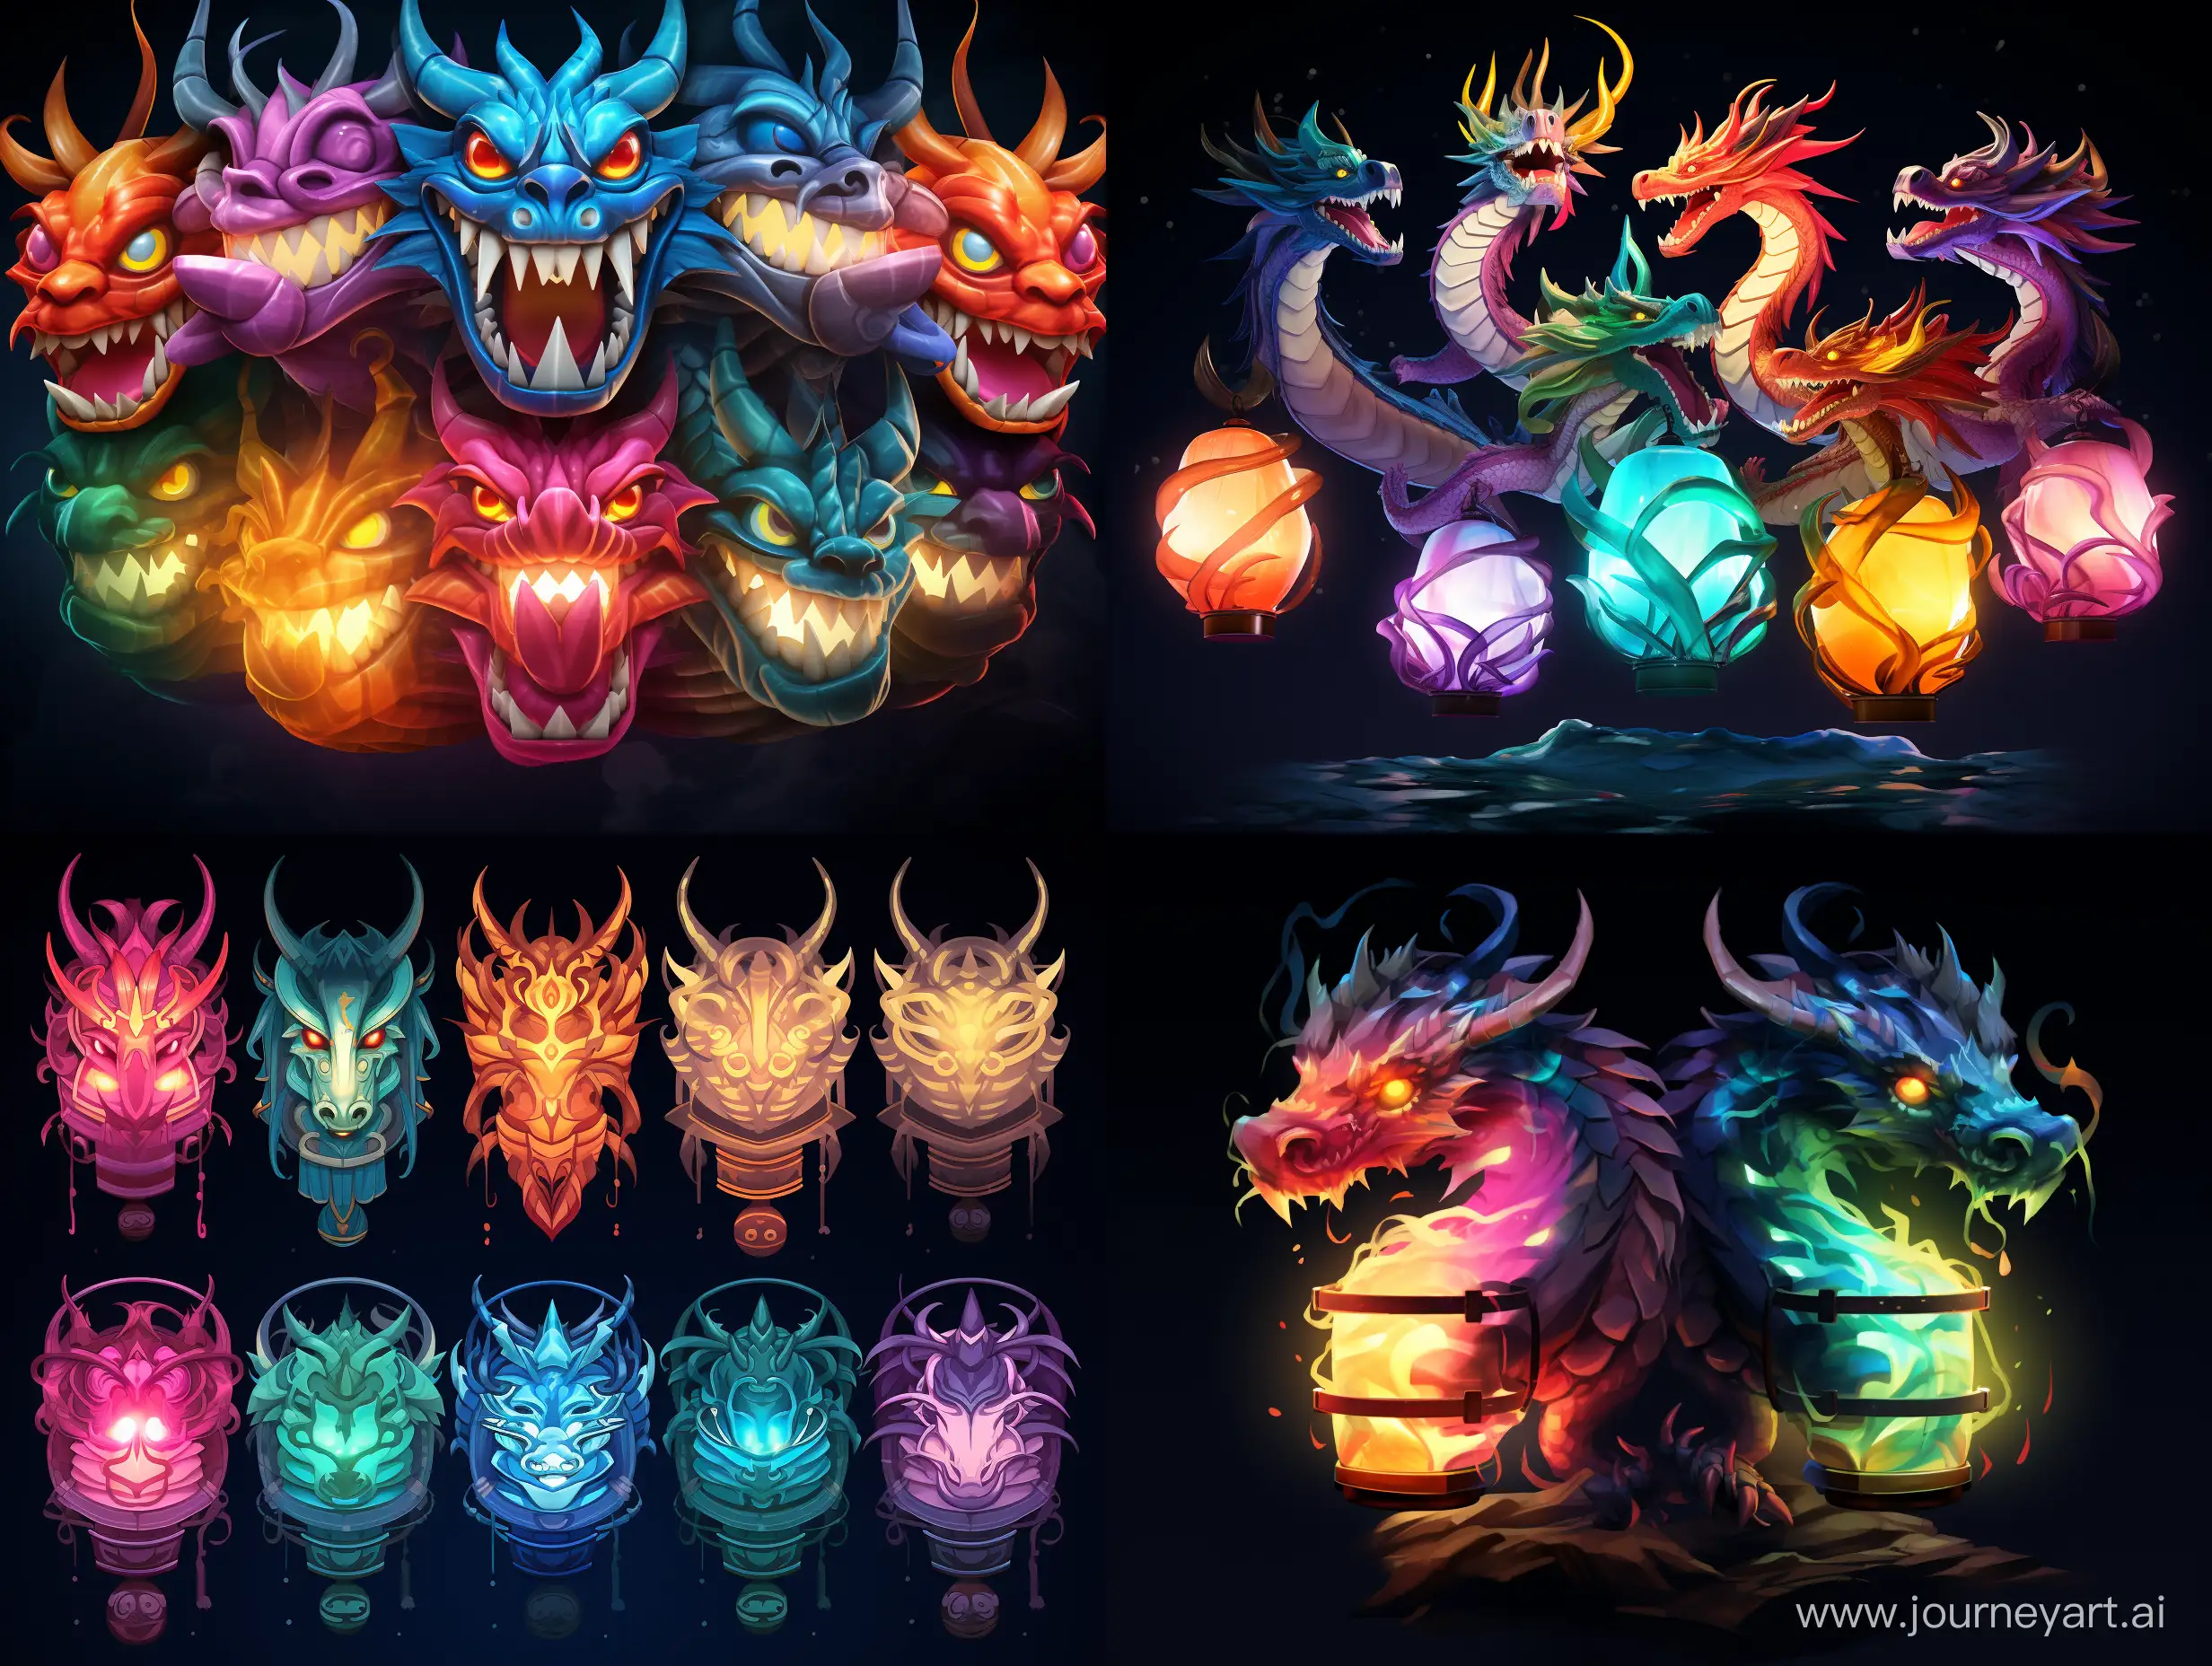 Vibrant-Cartoon-Dragon-Lanterns-Illuminating-the-Night